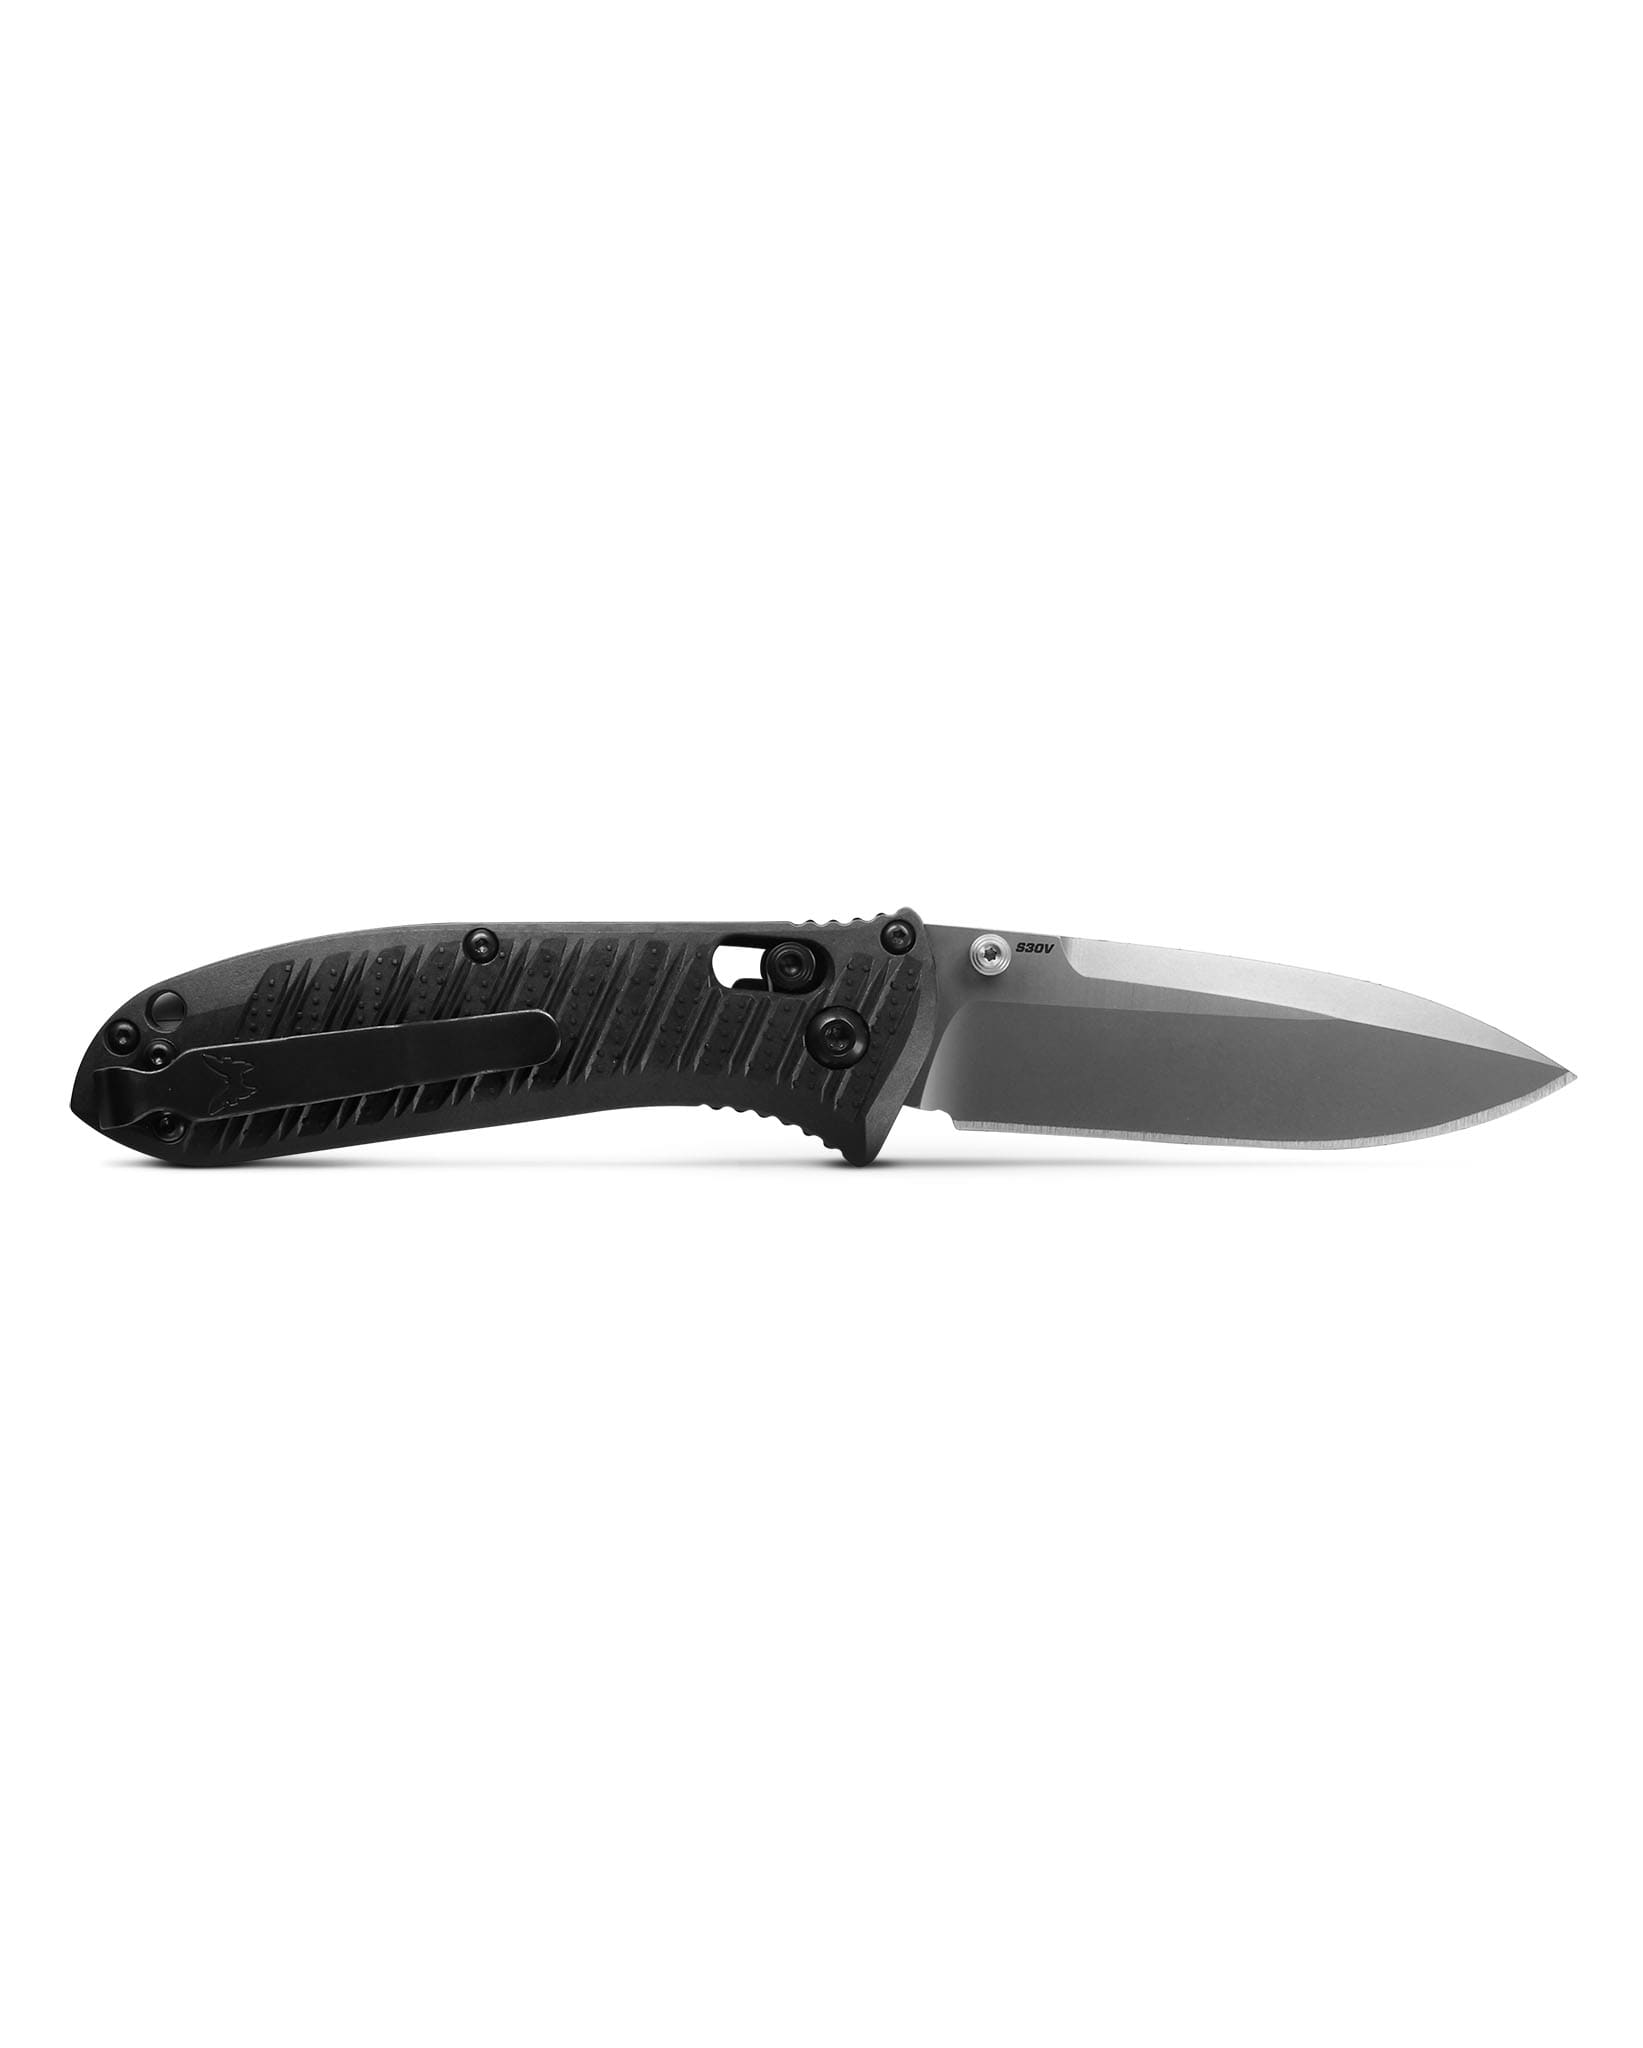 Benchmade® 575-1 Mini Presidio II Folding Knife